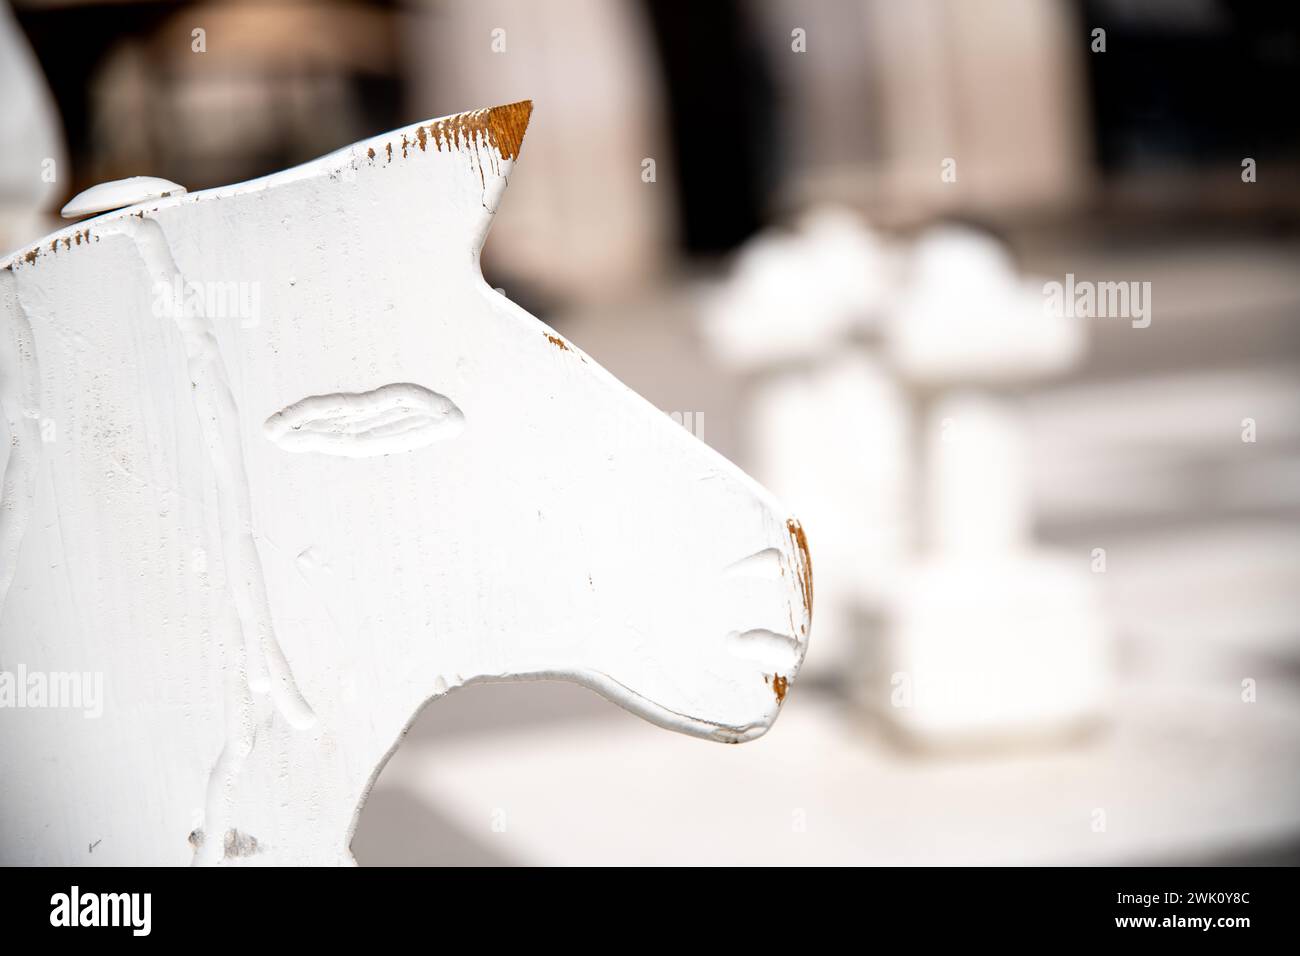 La tête usée d'un cheval blanc comme pièce de chevalier dans un grand jeu d'échecs. La peinture sur la tête et le museau est déjà rayée. Banque D'Images